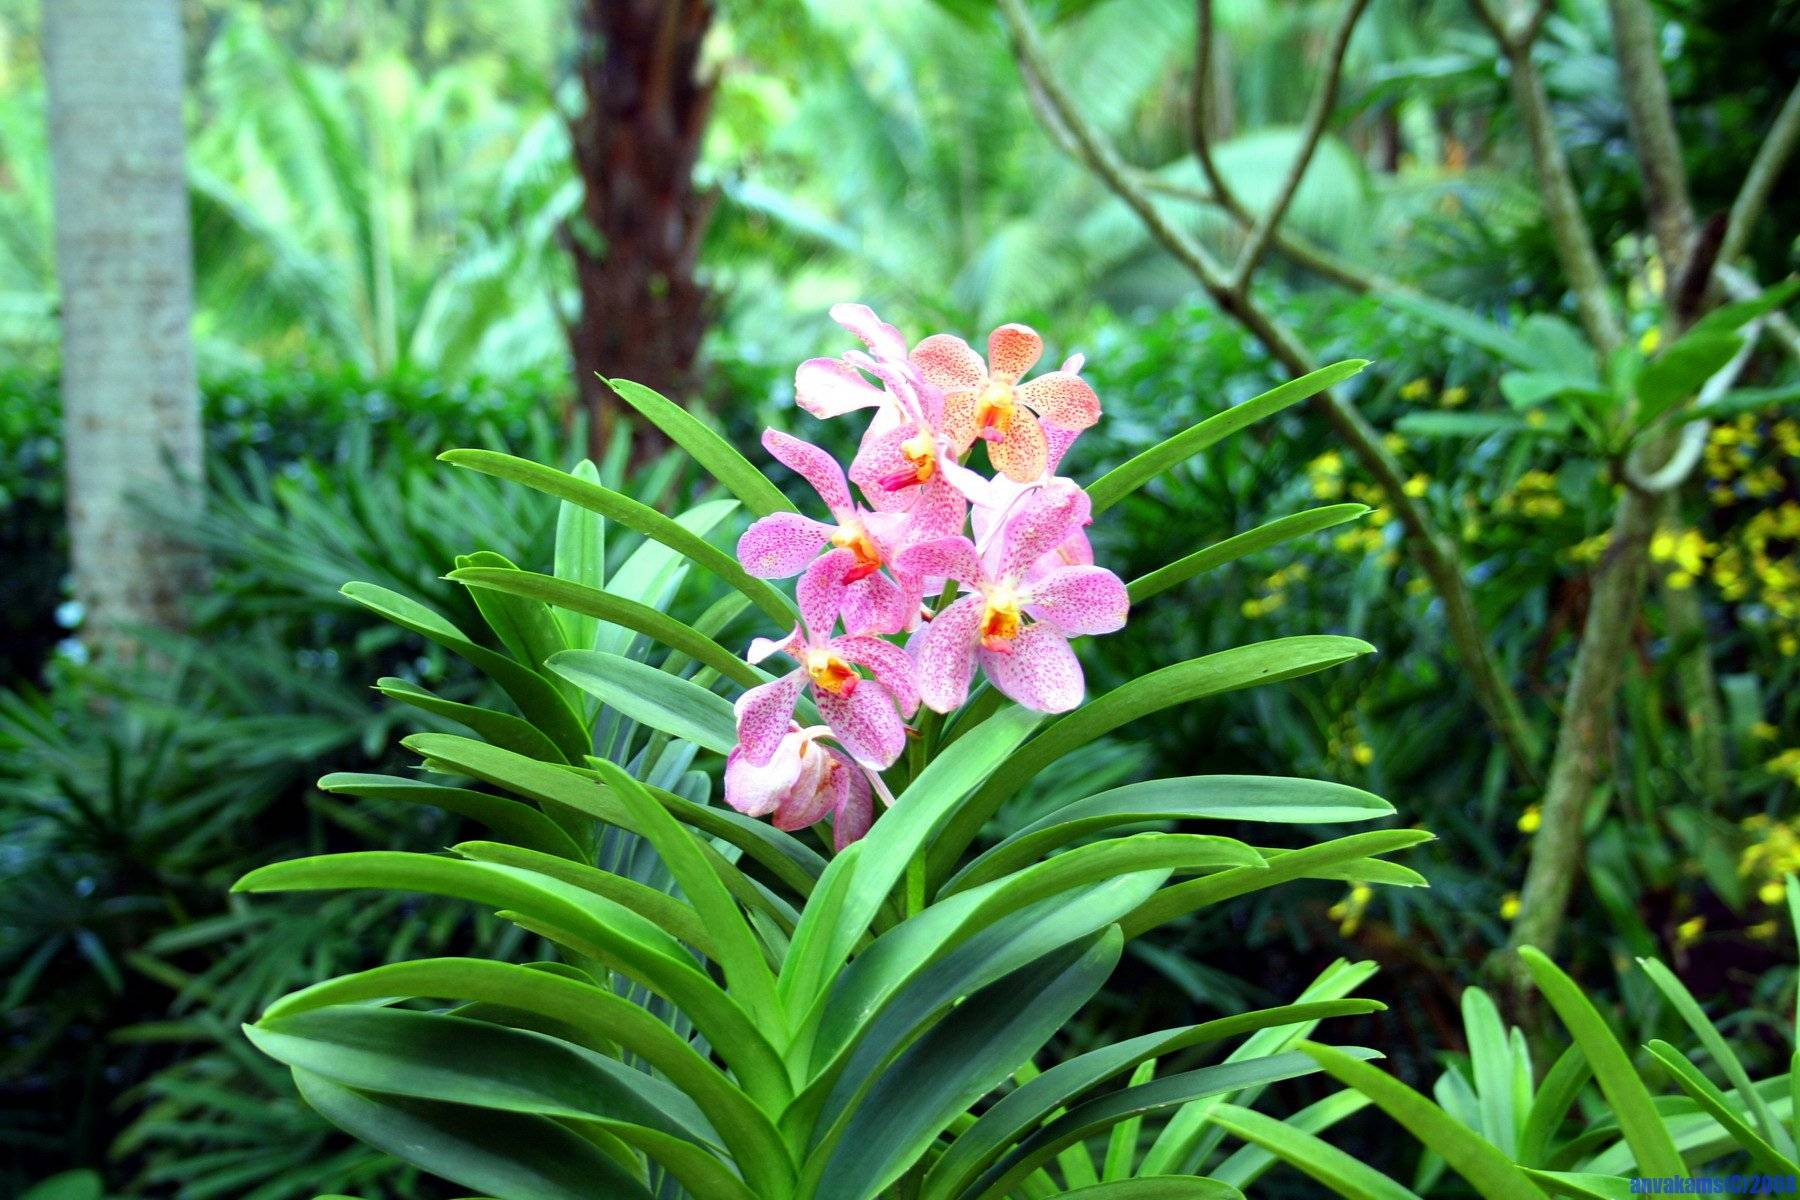 Лесные орхидеи: как выглядят северные цветы, а также растения в тропической местности, растения подмосковья и беламканда китайская